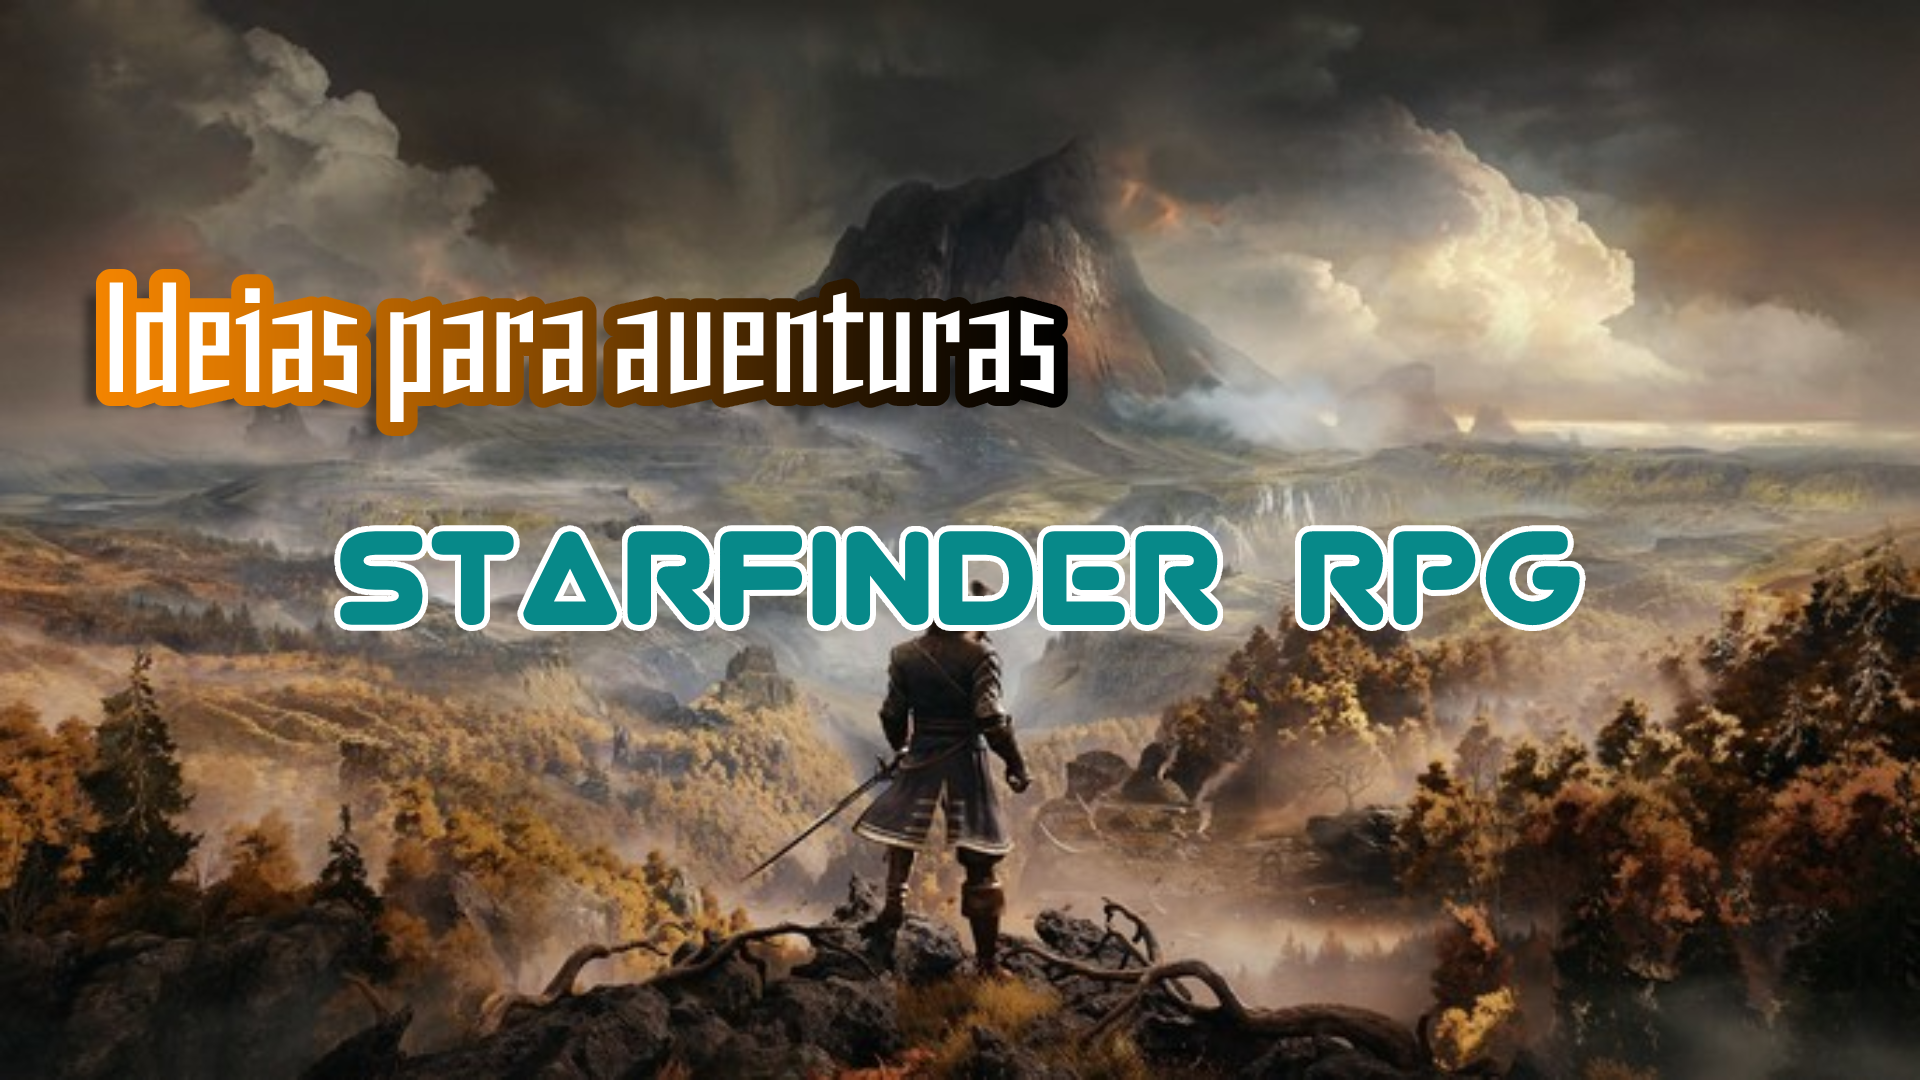 Ideias para Aventuras – Starfinder RPG